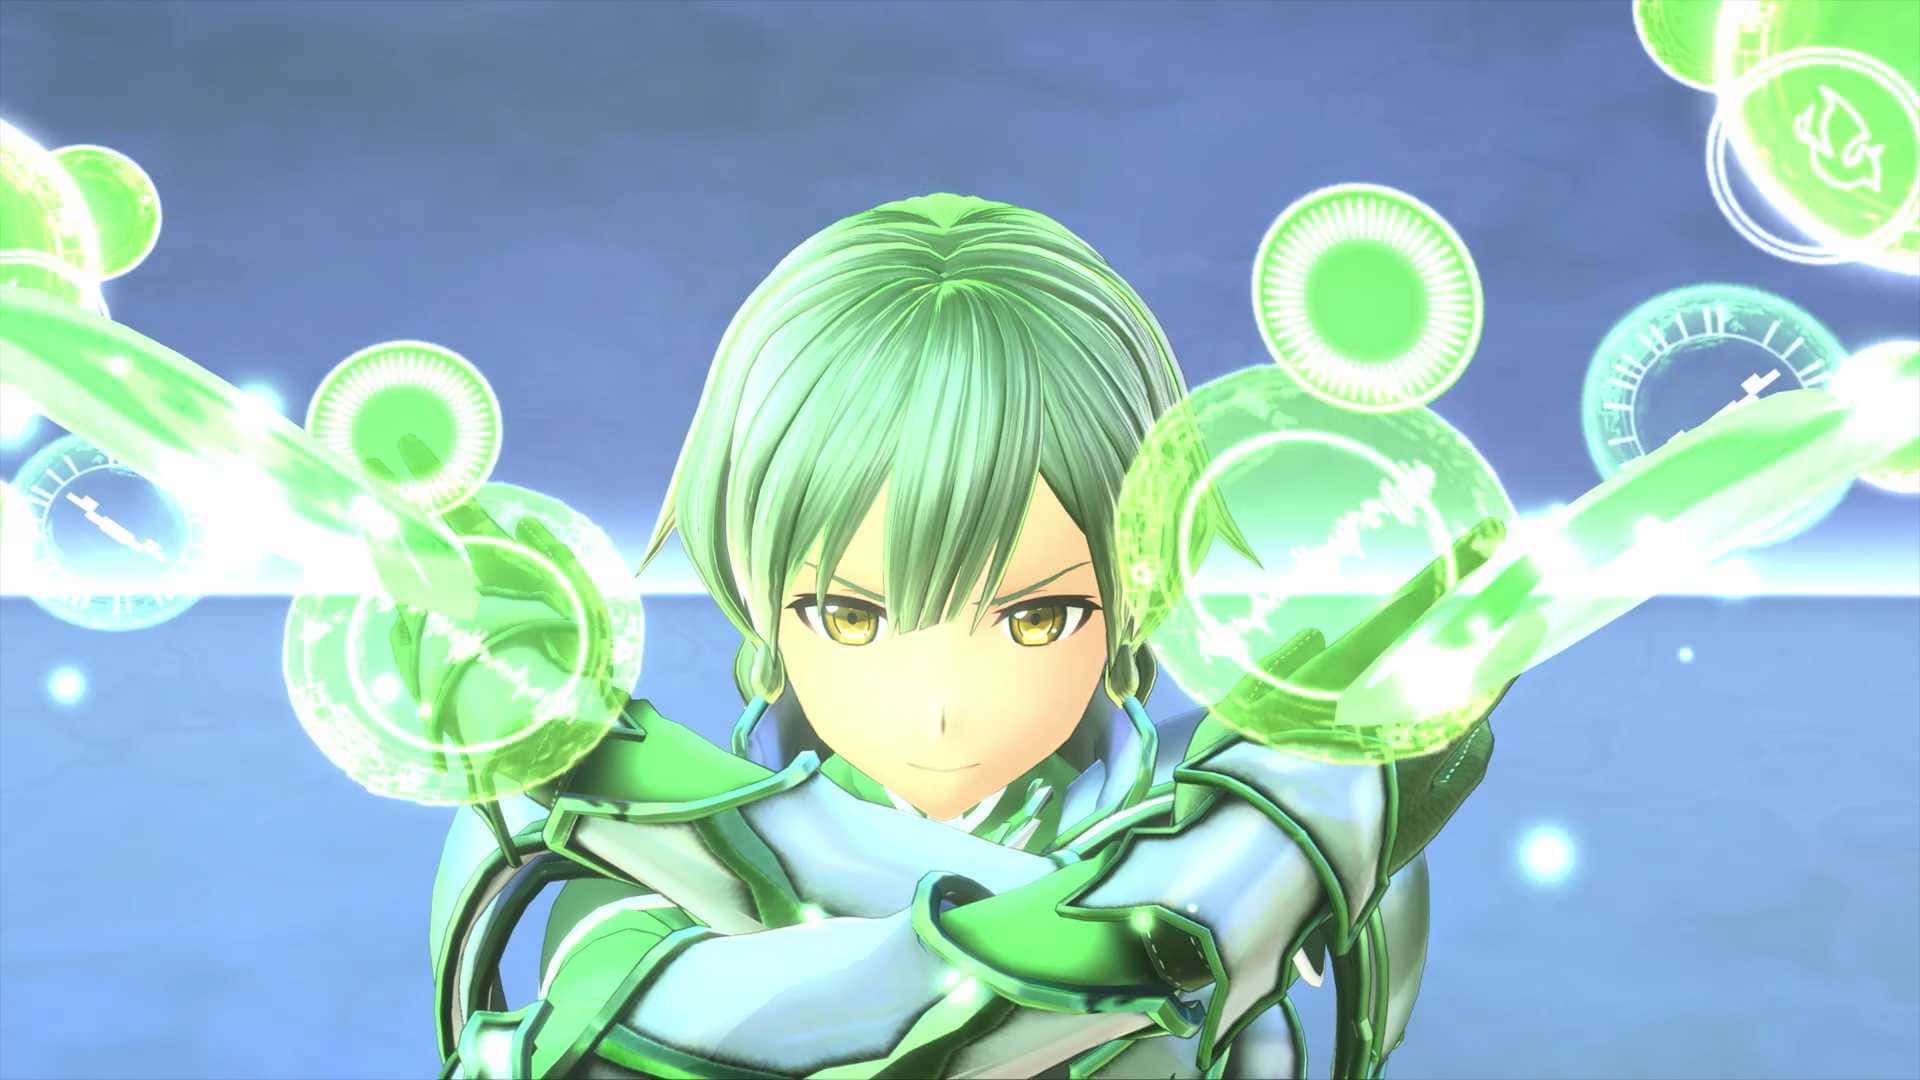 En grøn anime-karakter, der holder en grøn sværd